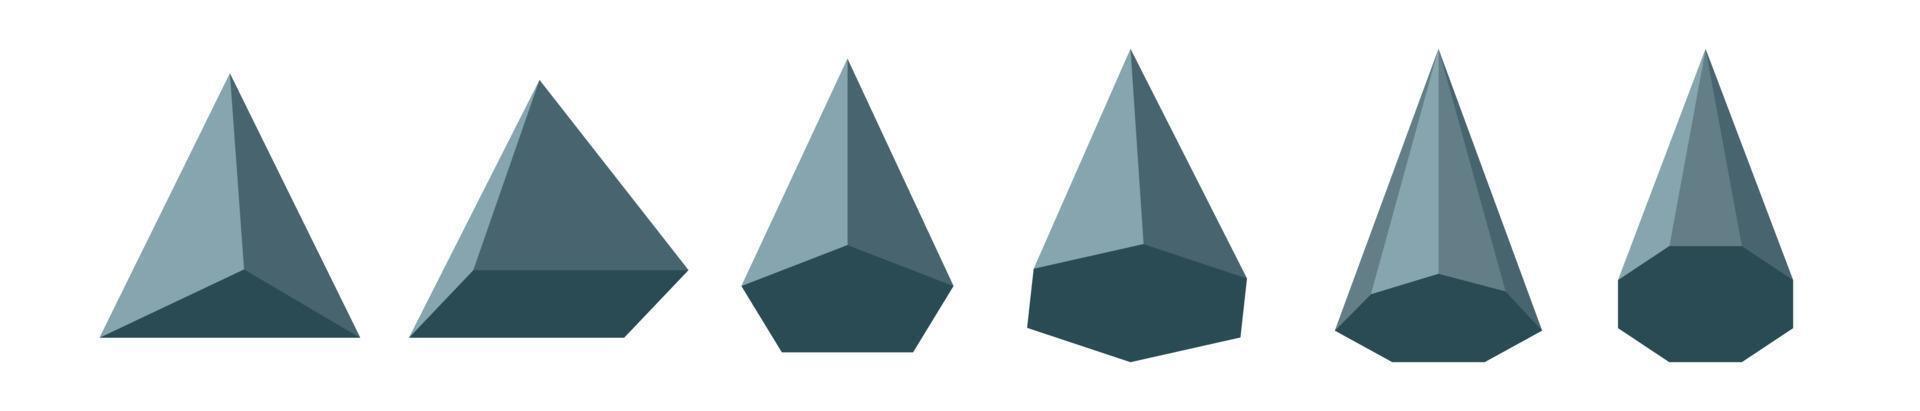 uppsättning pyramidtyper. matematiska geometriska figurer. polyhedron.triangulär rektangulär femkantig hexagonal heptagonal åttakantig polygonal pyramid. vektor illustration